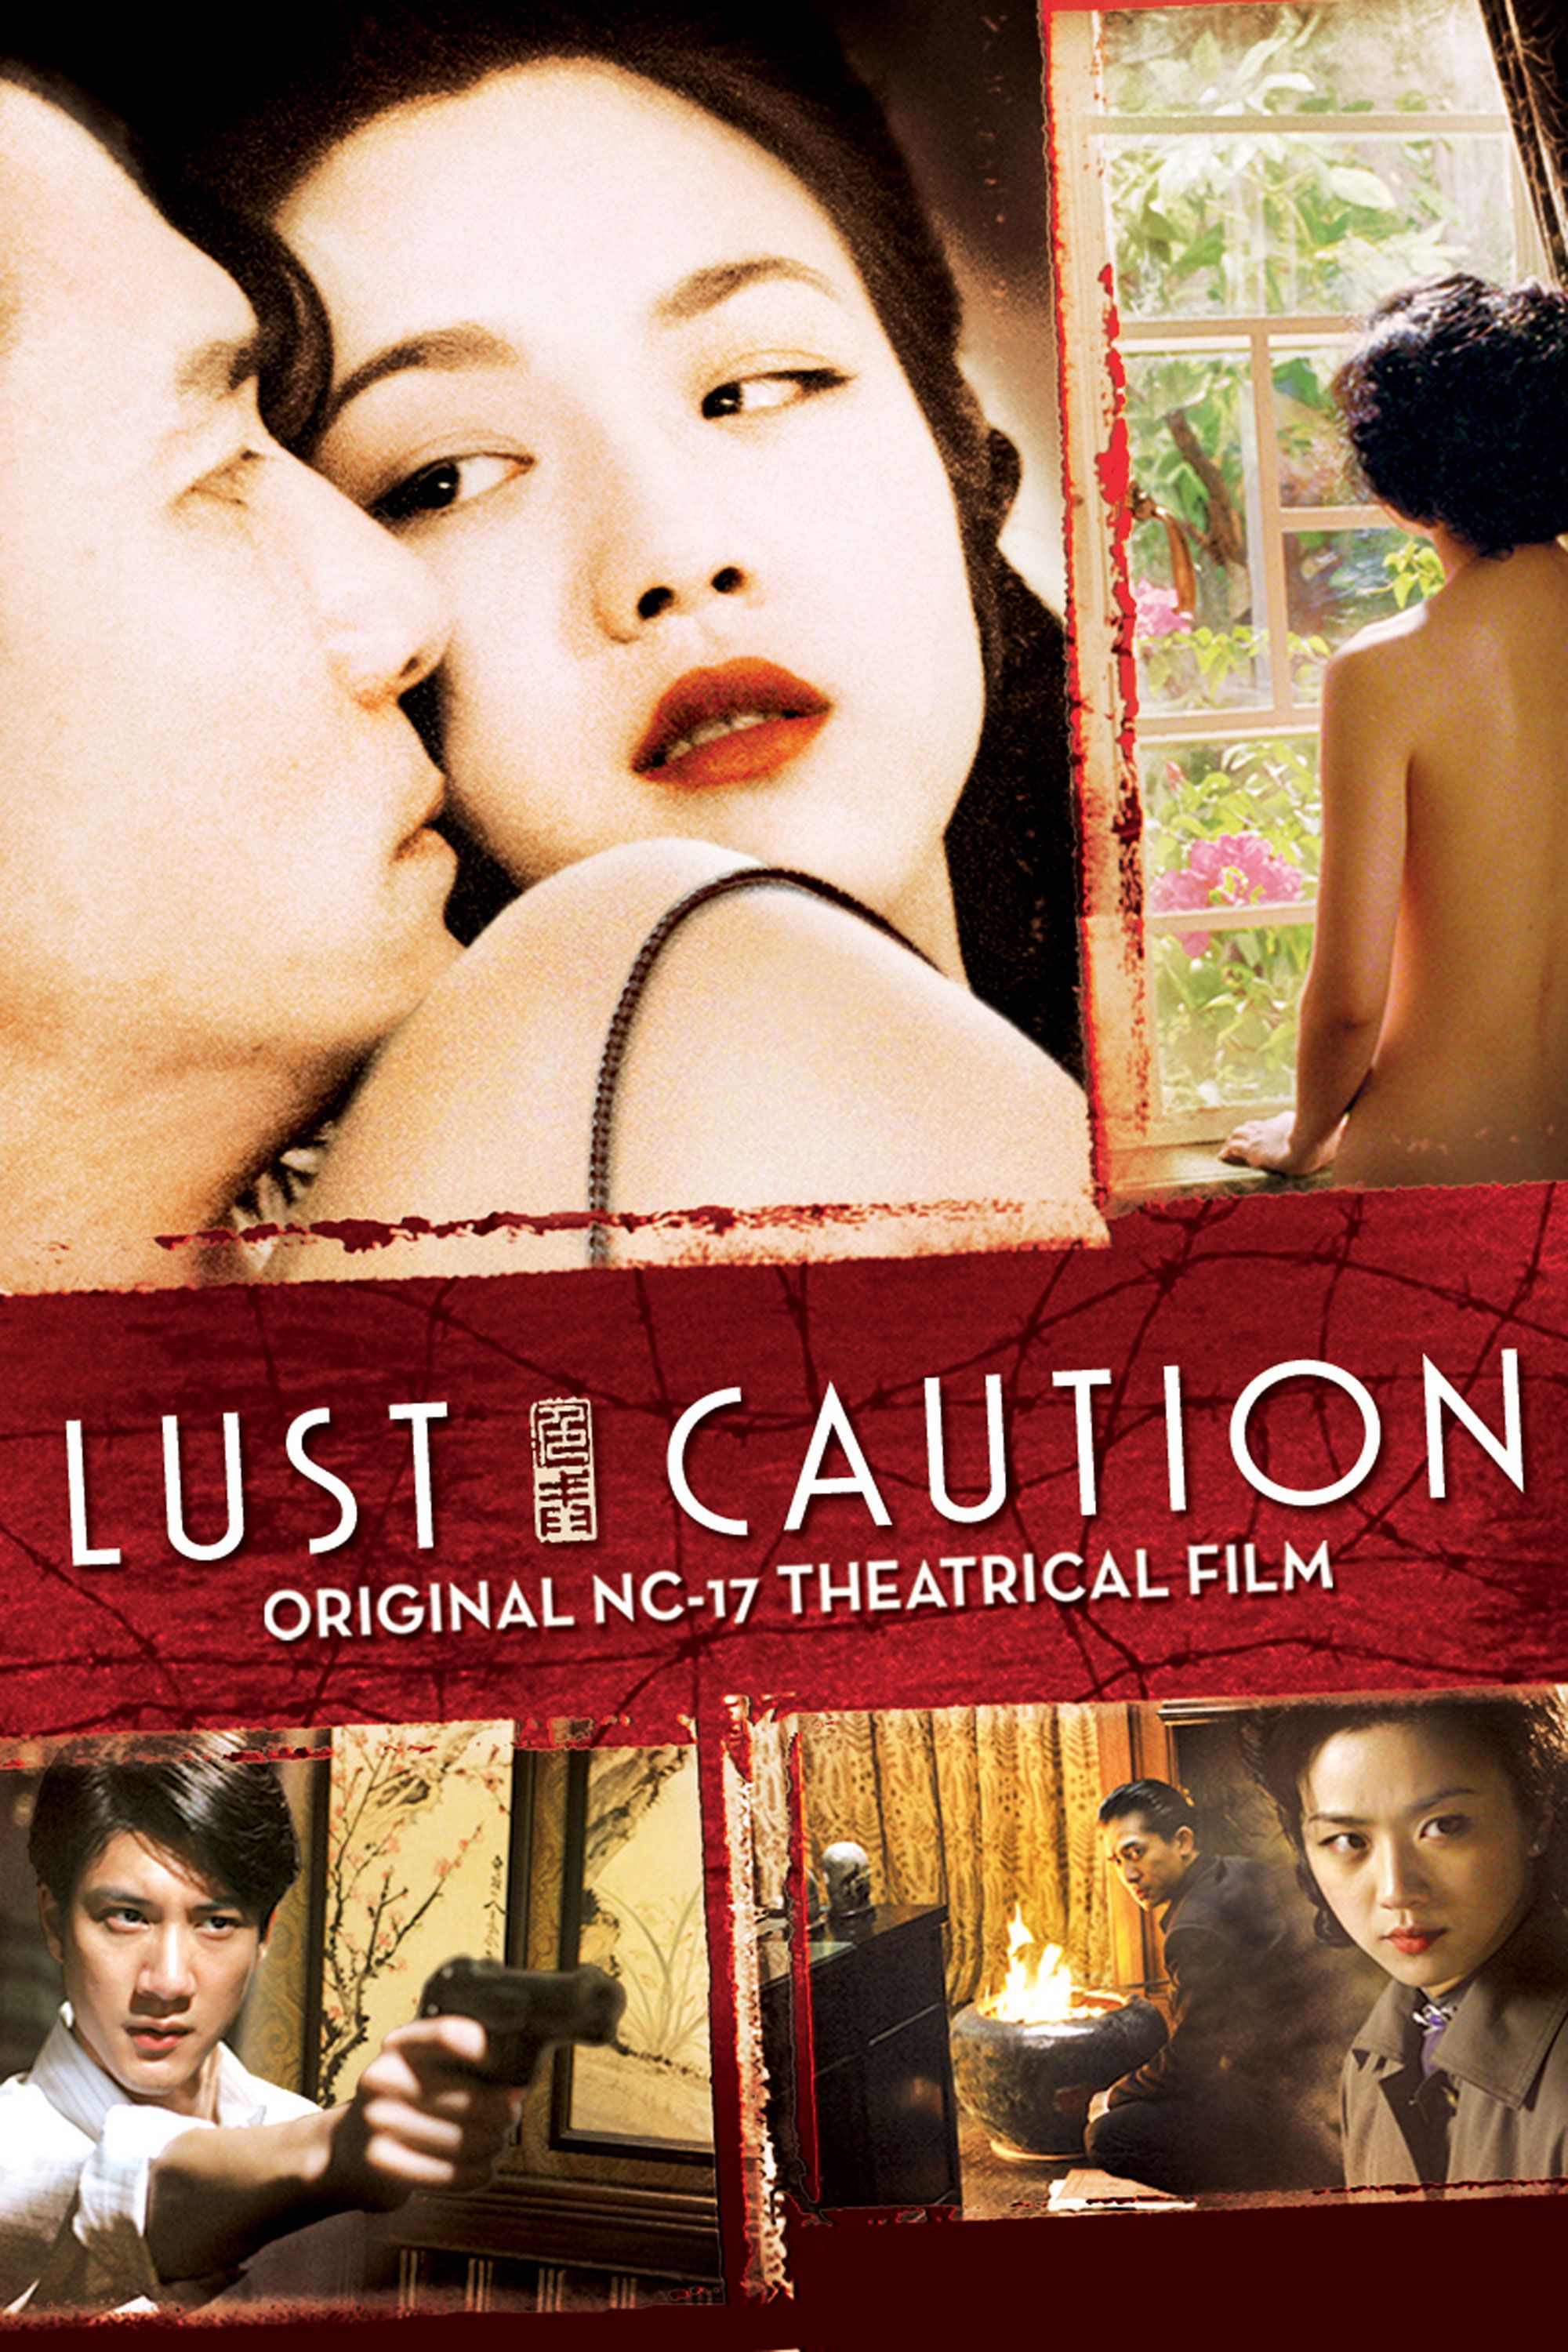 Watch lust caution movie online